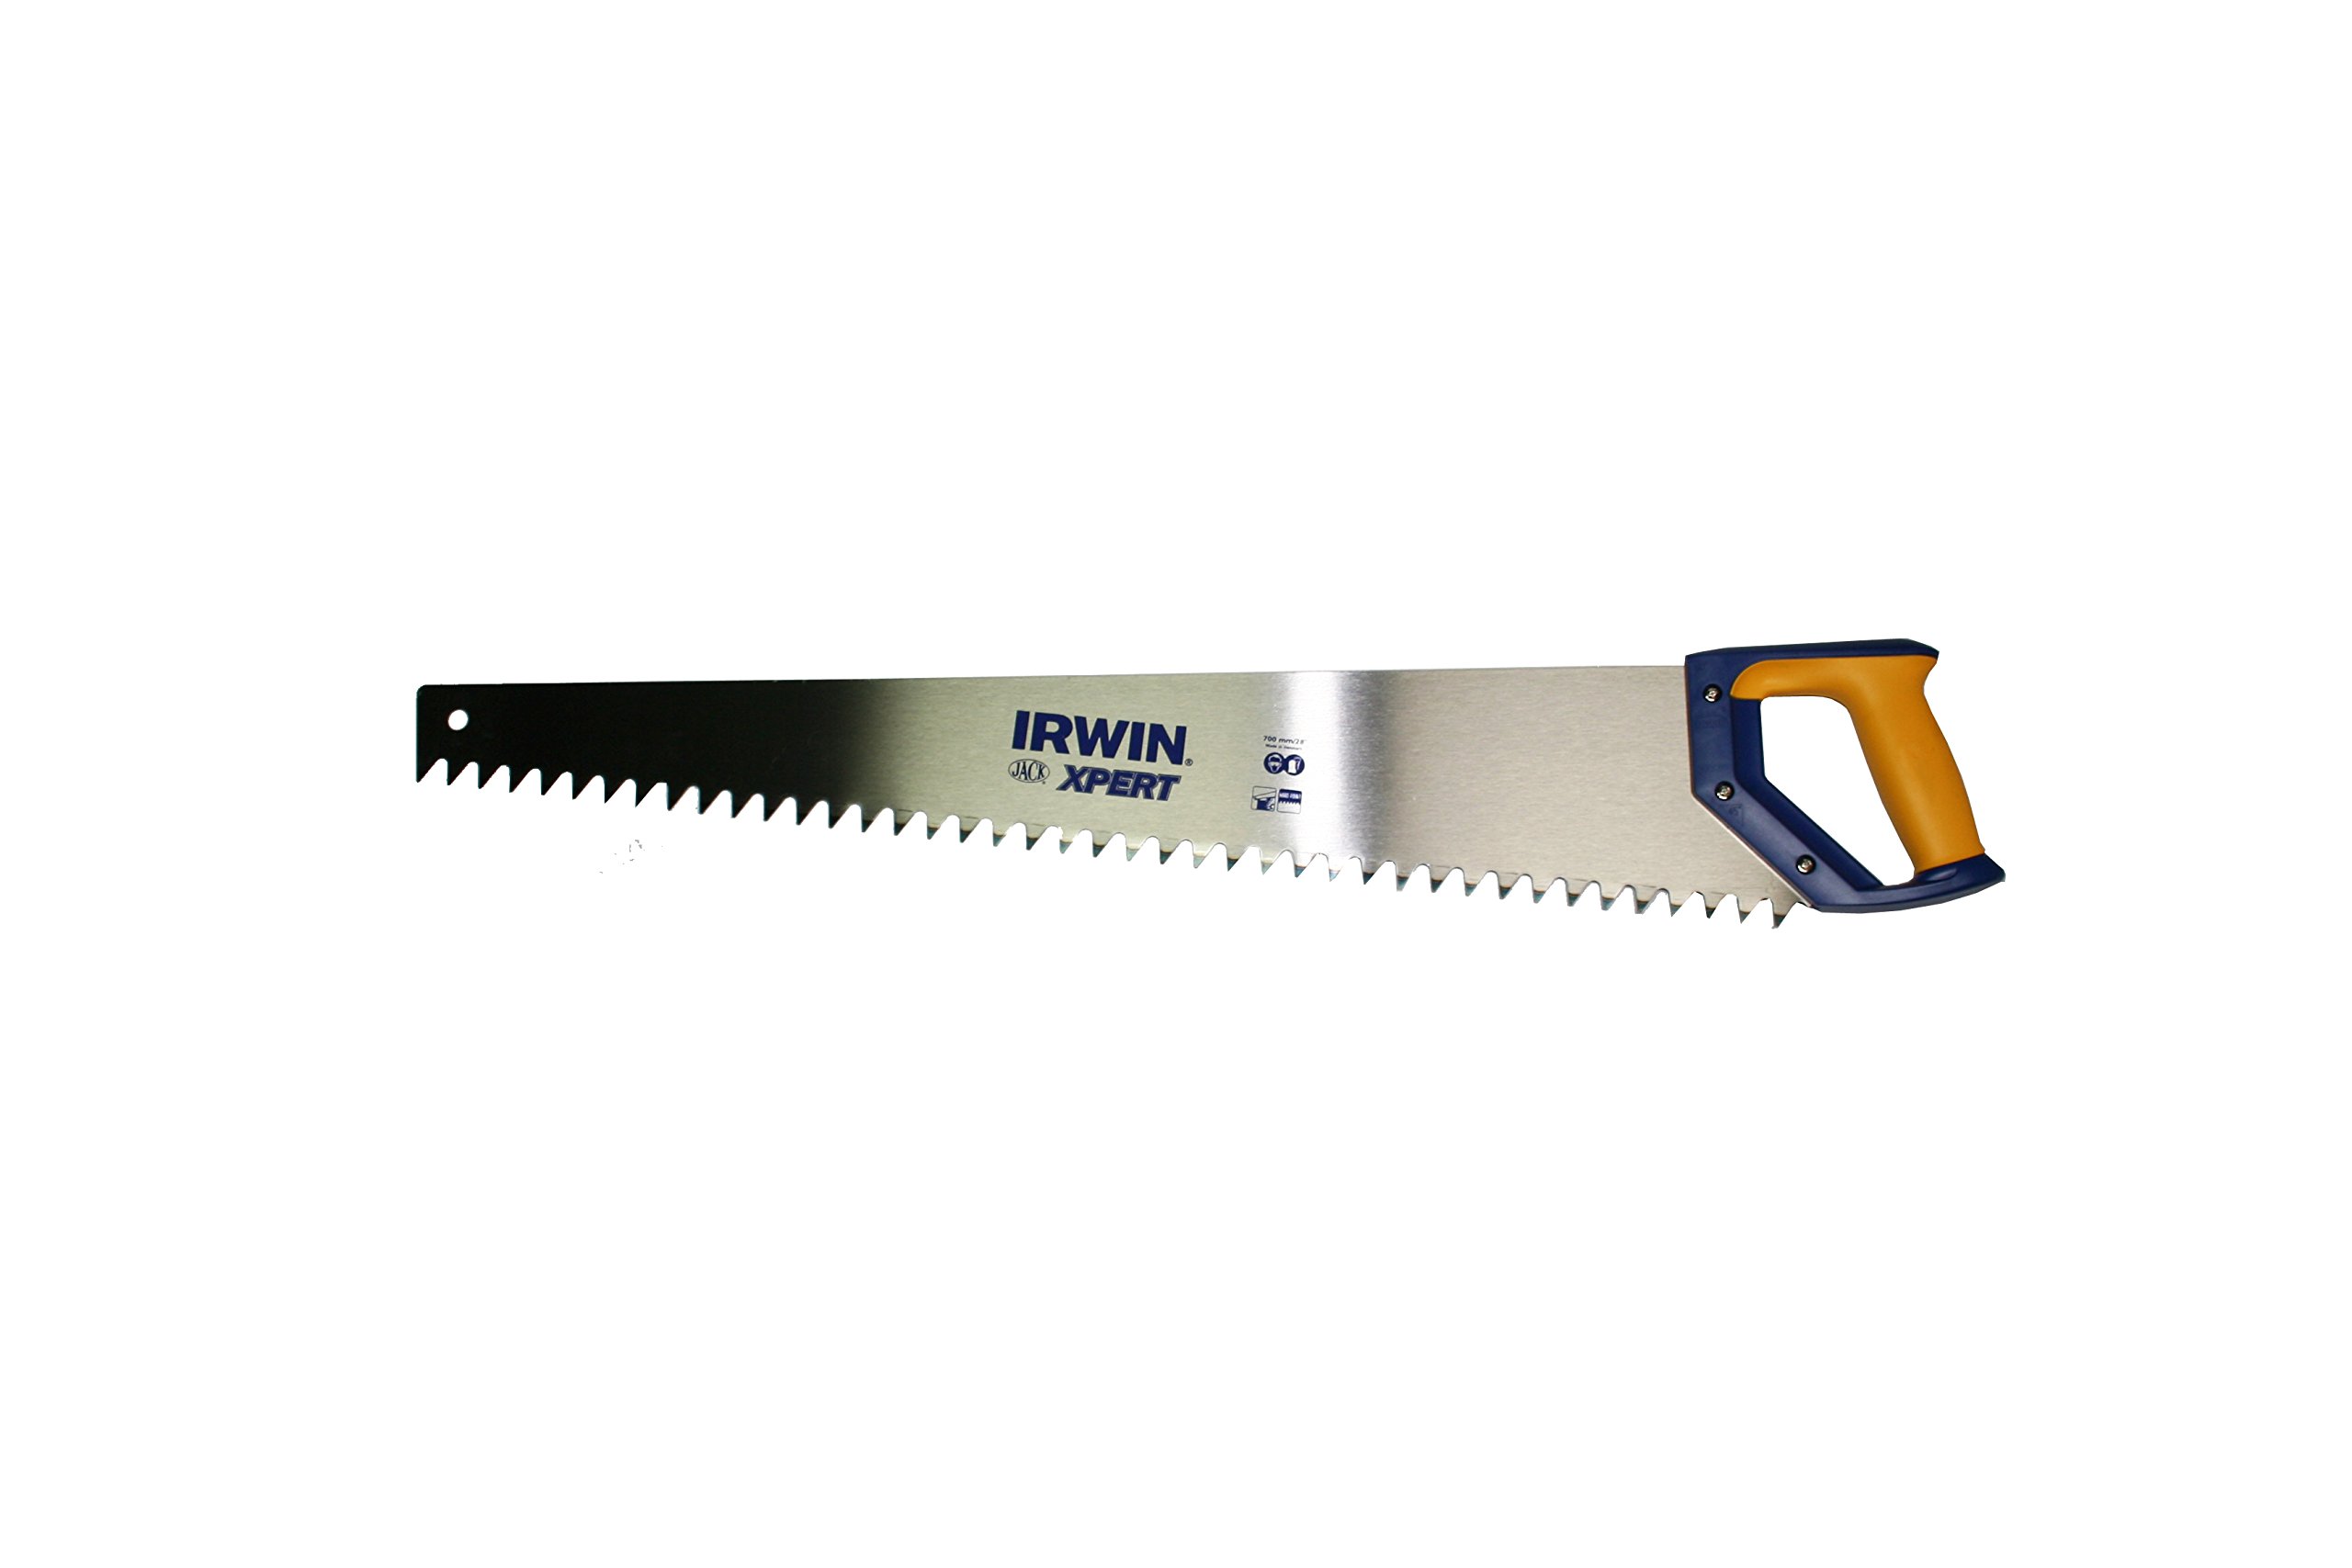 Irwin Xpert Leichtbeton-Handsäge 700 mm, Zähne gehärtet, 2K-Griff, 10505548